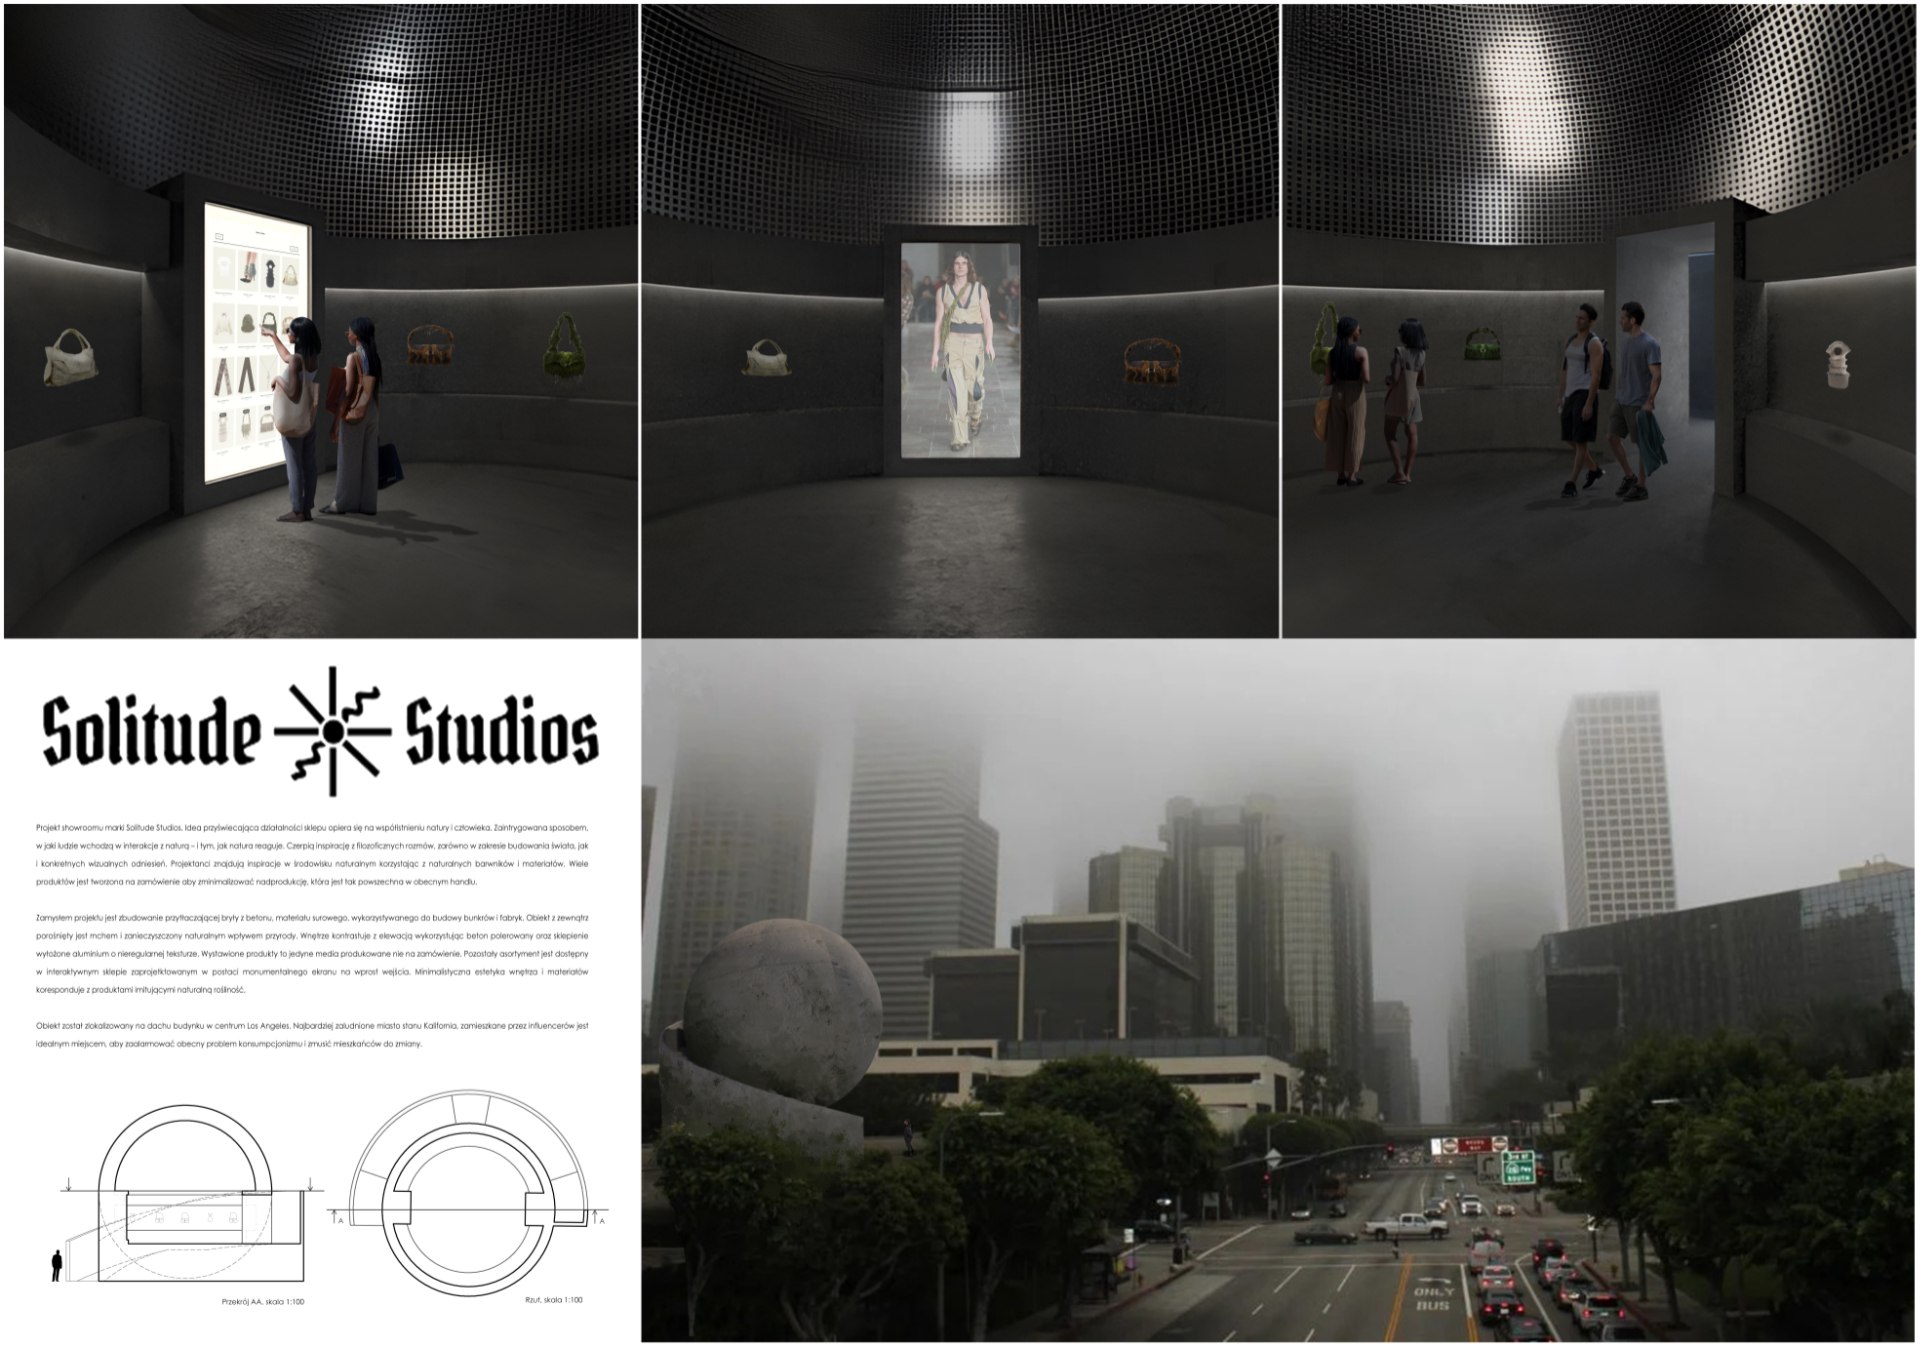 Projekt koncepcyjny showroom’u marki Solitude Studios, zawierający komputerowe wizualizacje barwnych widoków perspektywicznych, ukazujących przestrzeń ekspozycji z punktu widzenia osoby zwiedzającej oraz widok w pejzażu miasta, rzut i przekrój.